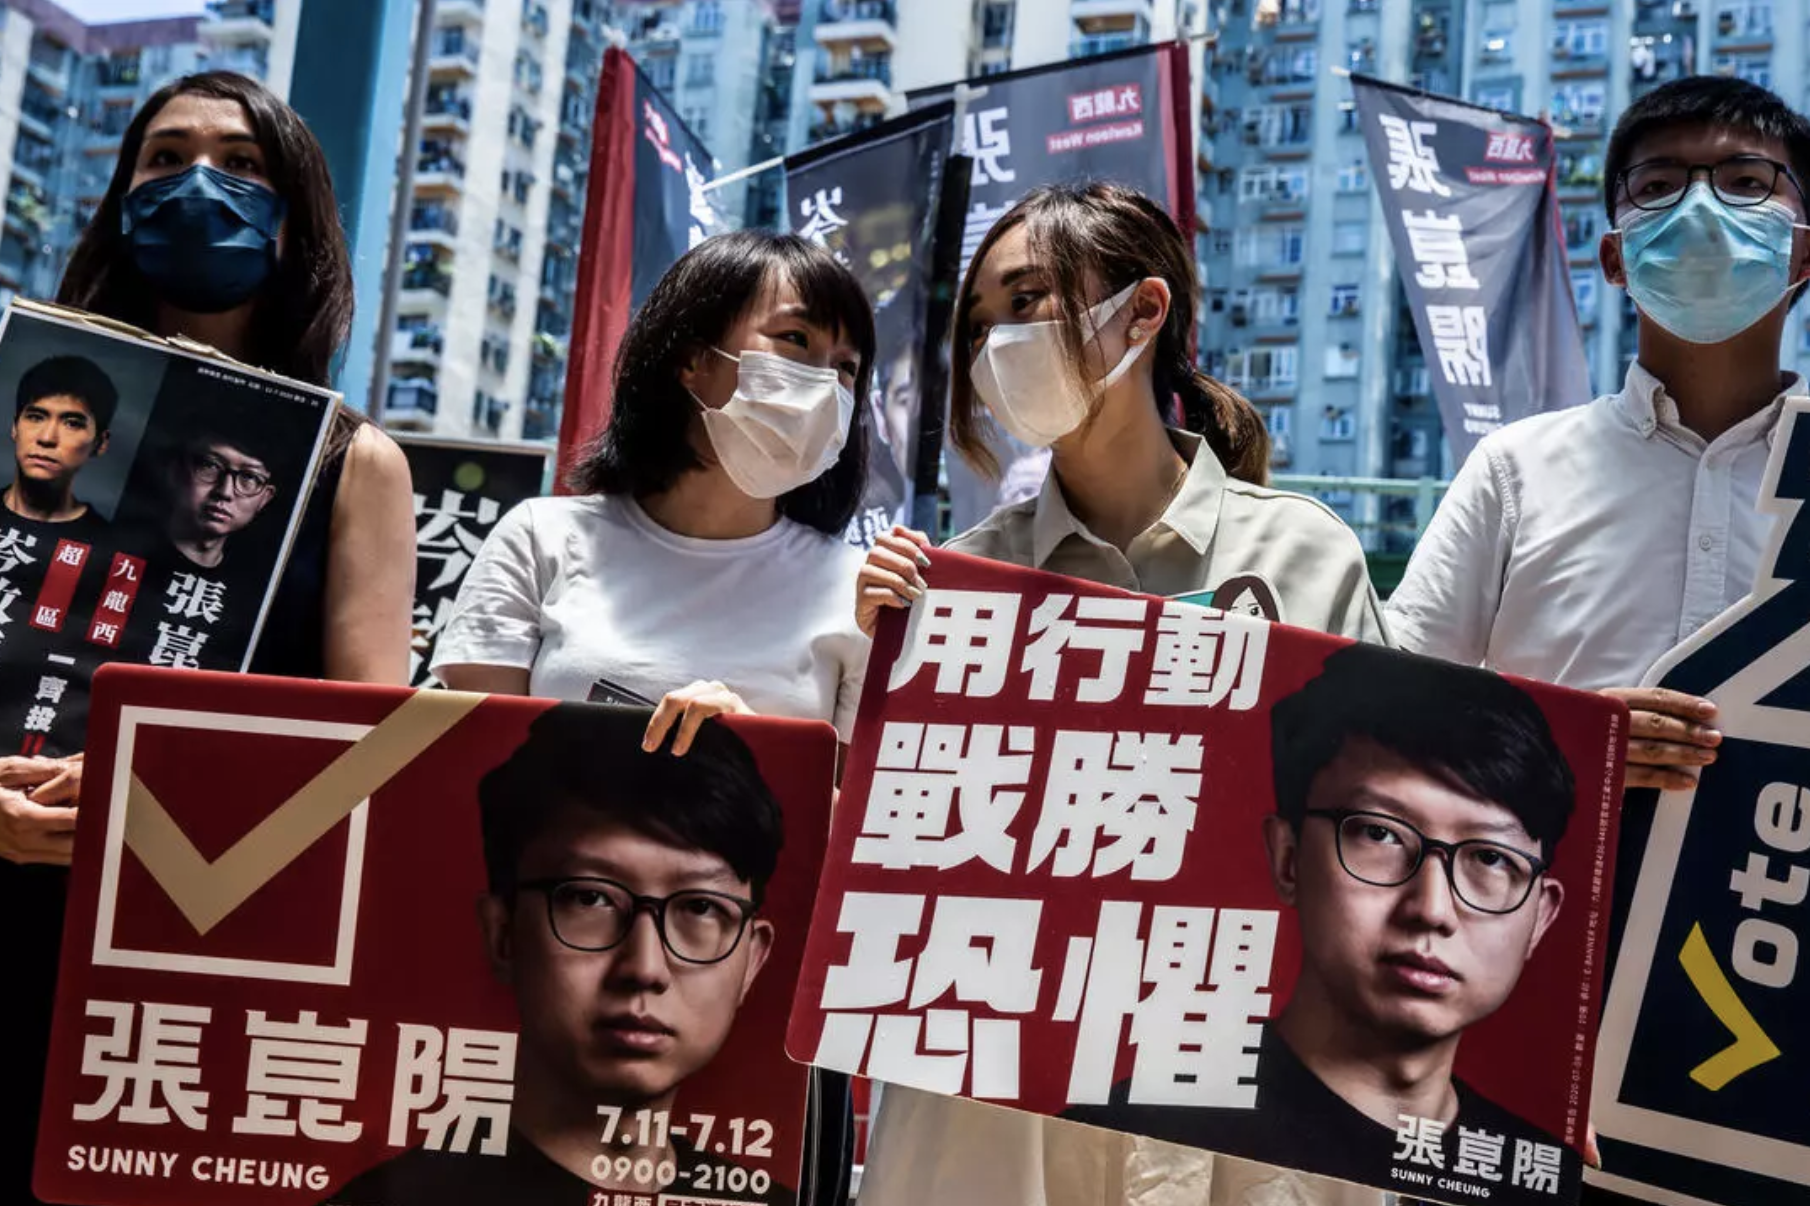 متظاهرون في هونغ كونغ يوم 12 /يوليو 2020 يطالبون بتعزيز الديموقراطية